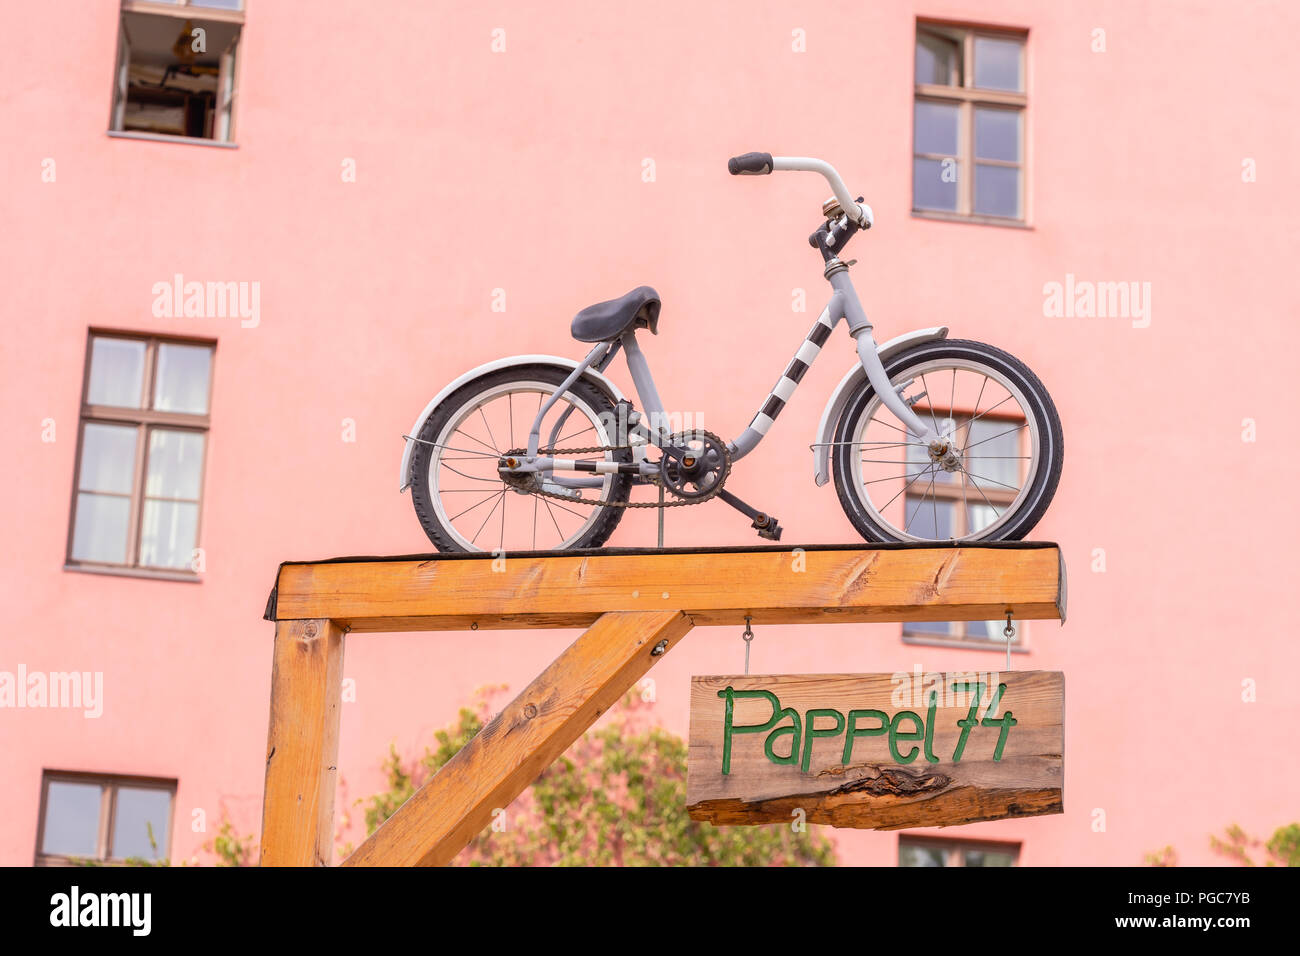 Eine kleine Kinder Fahrrad am Eingang der Pappel 74 - ein Jugendzentrum in der Kastanienallee im Bezirk Prenzlauer Berg, Berlin, Deutschland Stockfoto